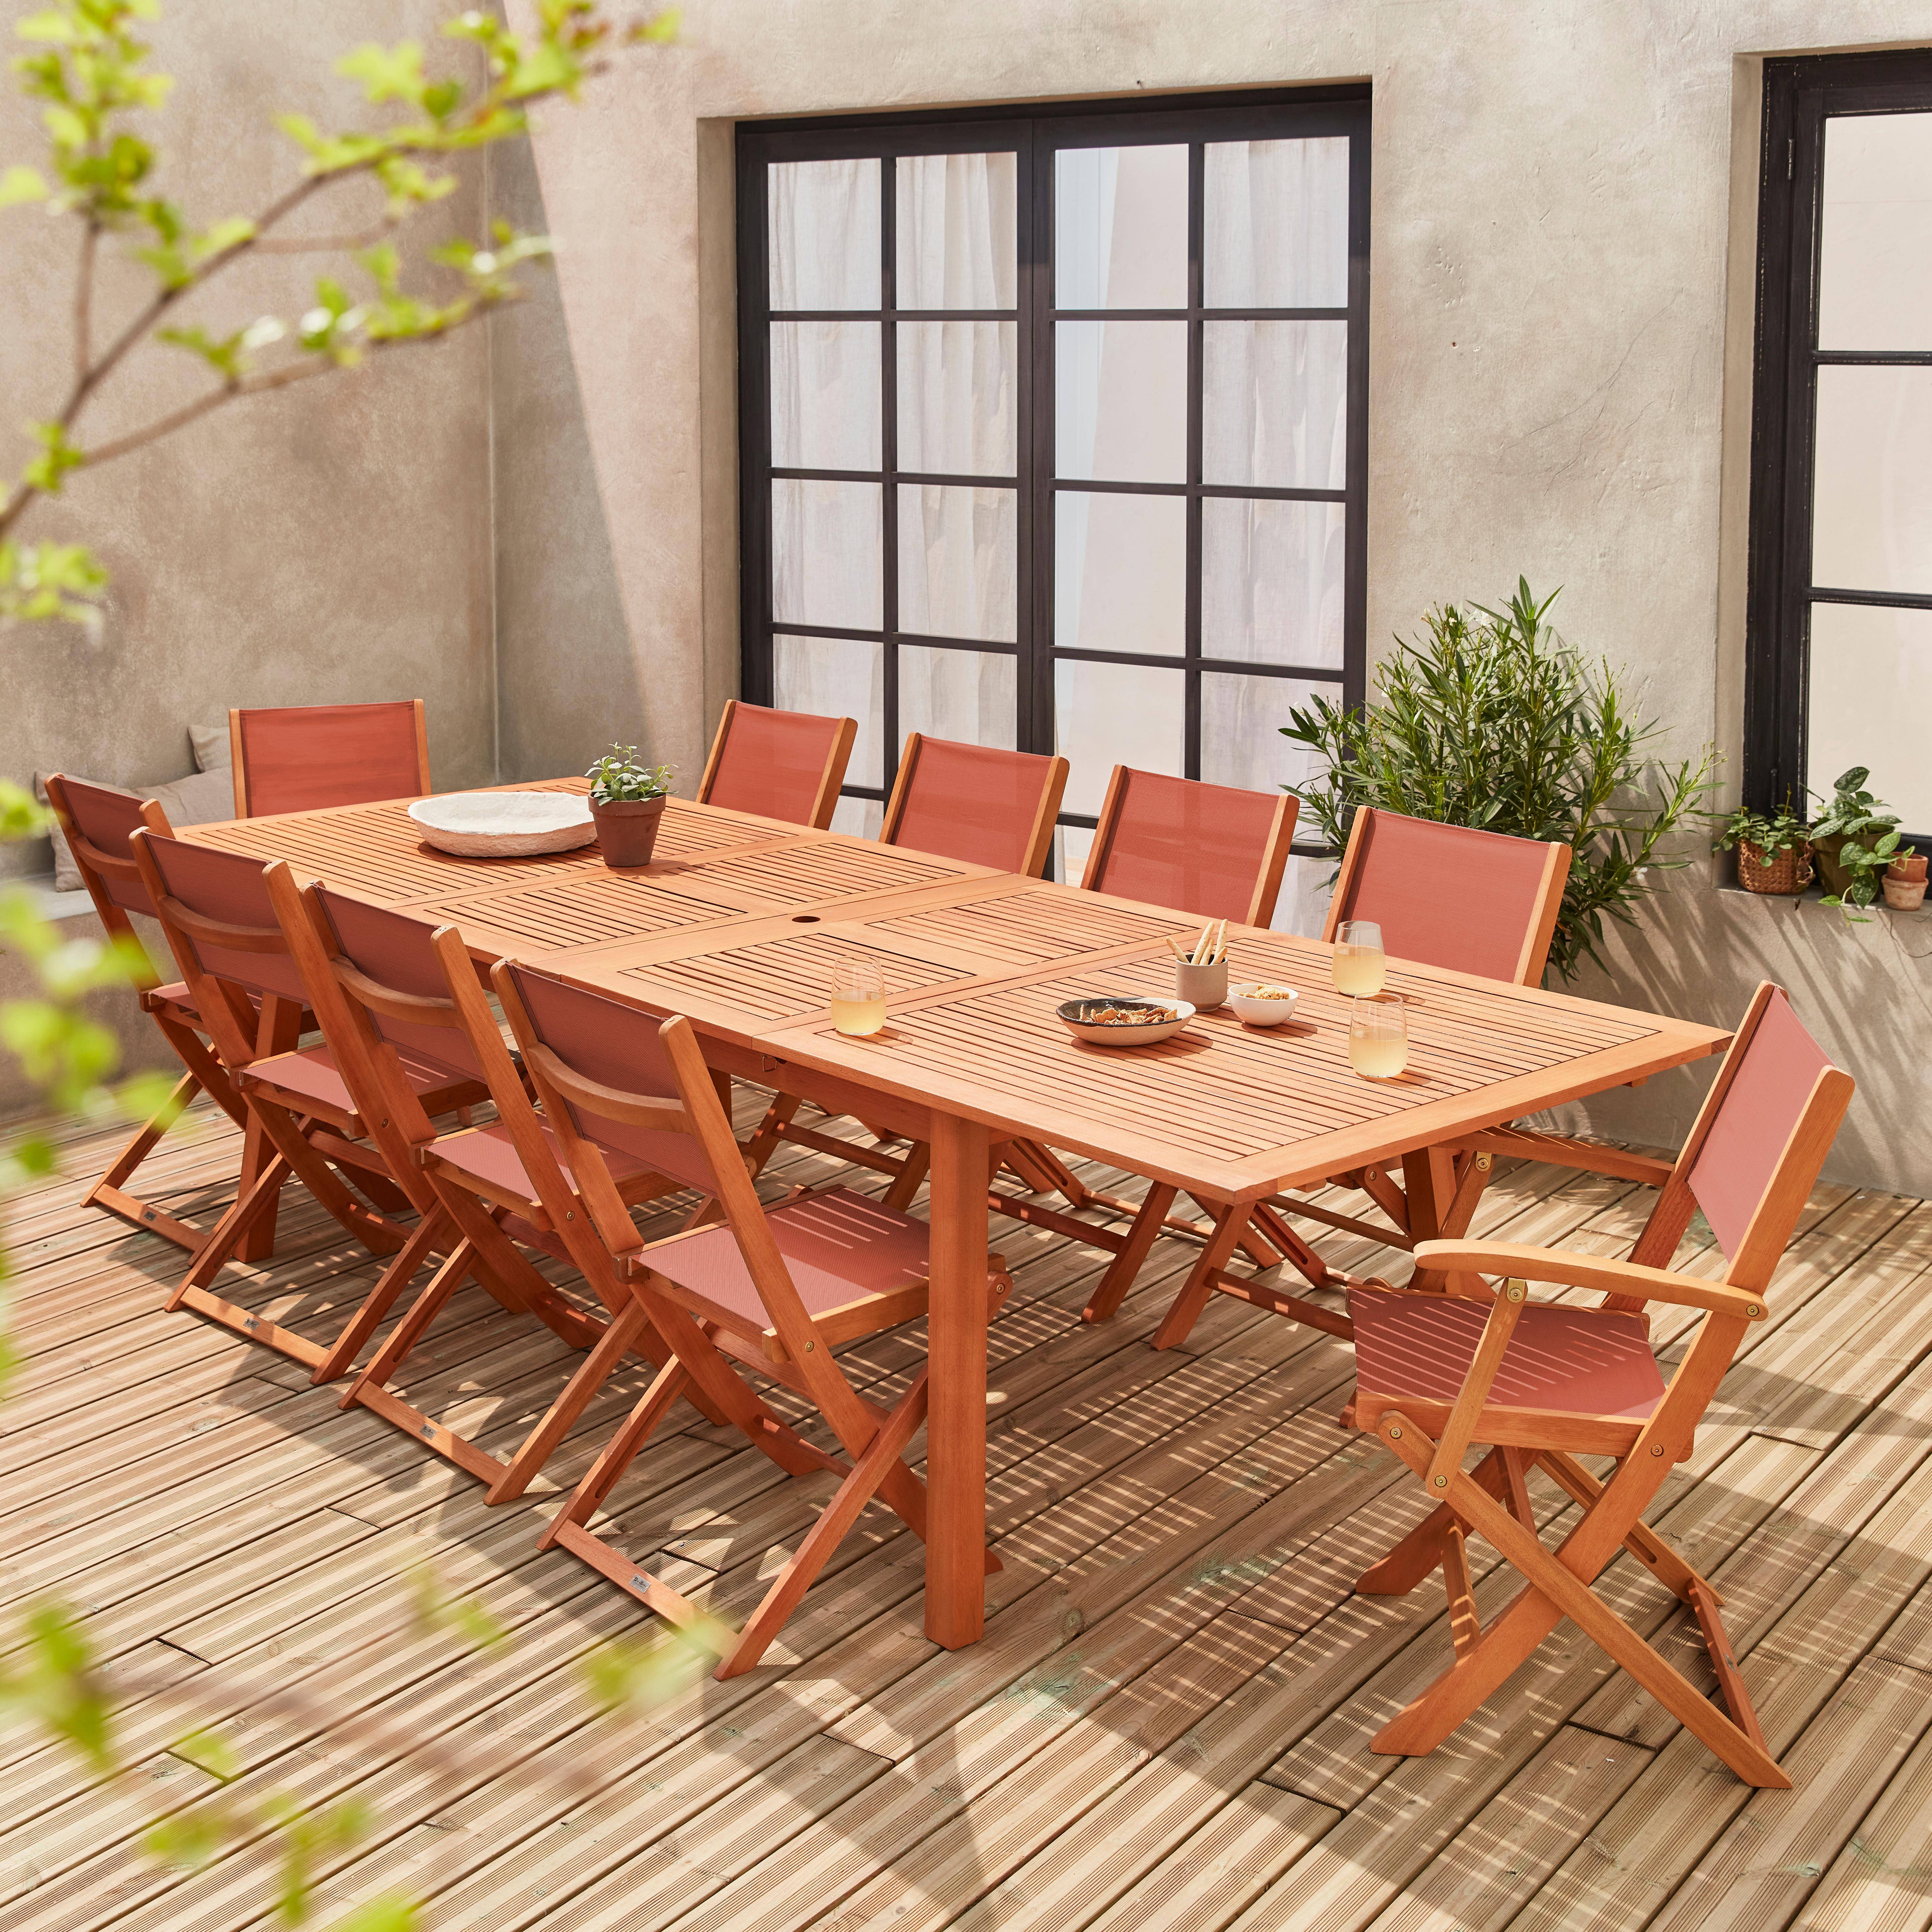 Ausziehbare Gartenmöbel aus Holz - Almeria Tisch 200/250/300cm mit 2 Verlängerungen, 2 Sesseln und 8 Stühlen, aus geöltem FSC Eukalyptusholz und Terra-Cotta Textilene Photo1